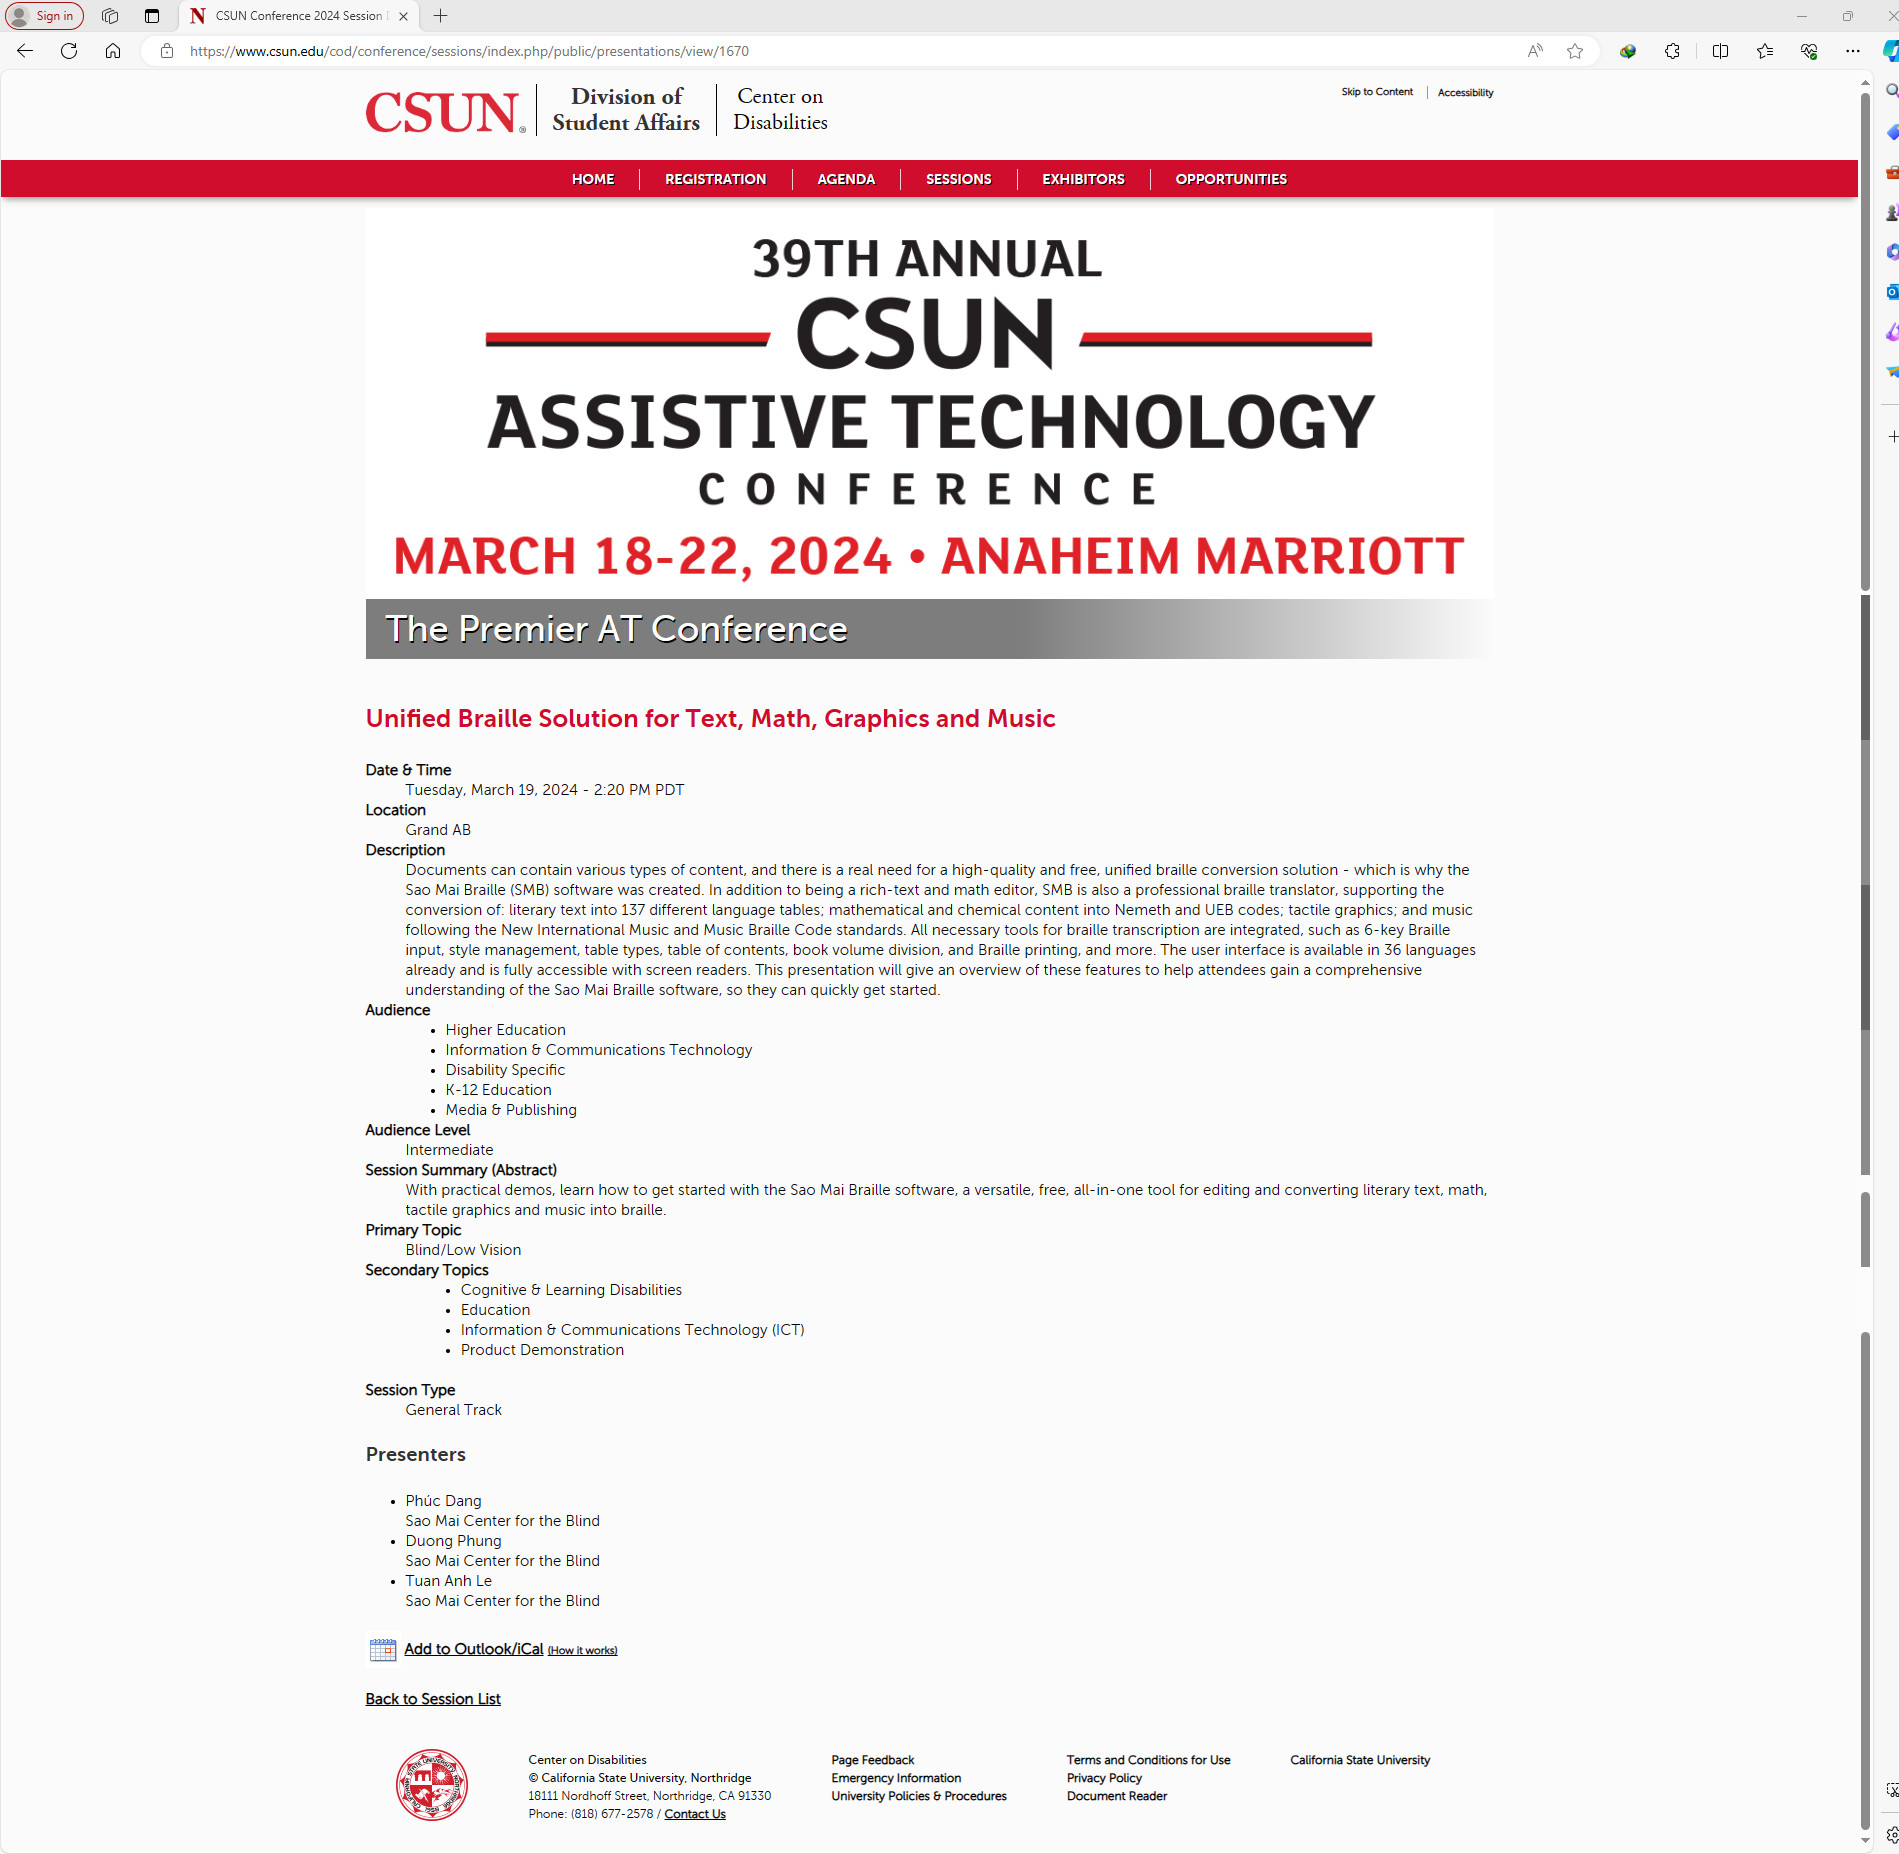 Chi tiết phiên thuyết trình của nhóm Sao Mai tại diễn đàn CSUN 2024